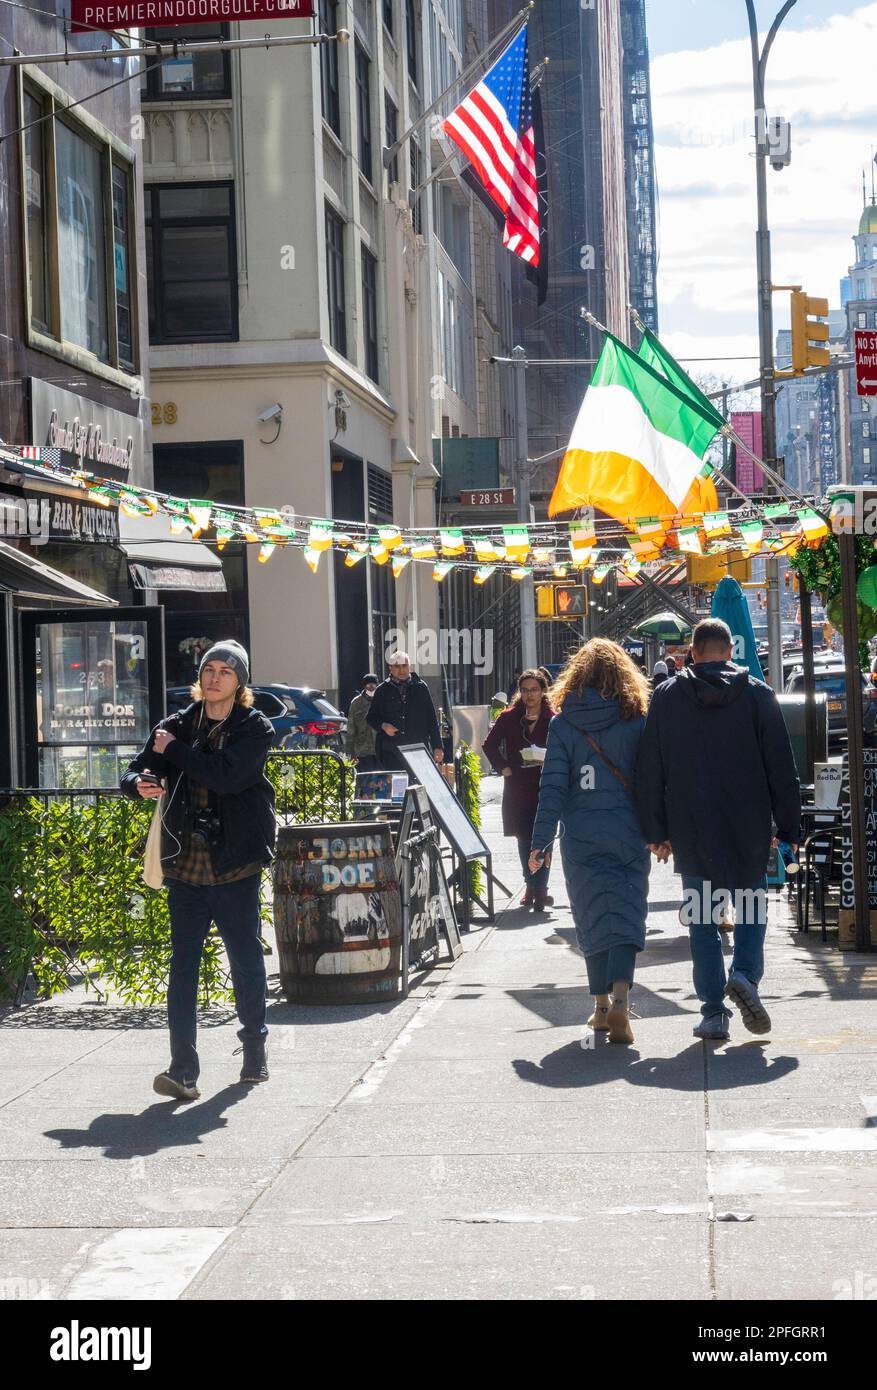 Le John Doe, pub irlandais sur la cinquième avenue décoré de drapeaux irlandais pour la St. Patrick's Day Celebrations, 2023, New York City, États-Unis Banque D'Images